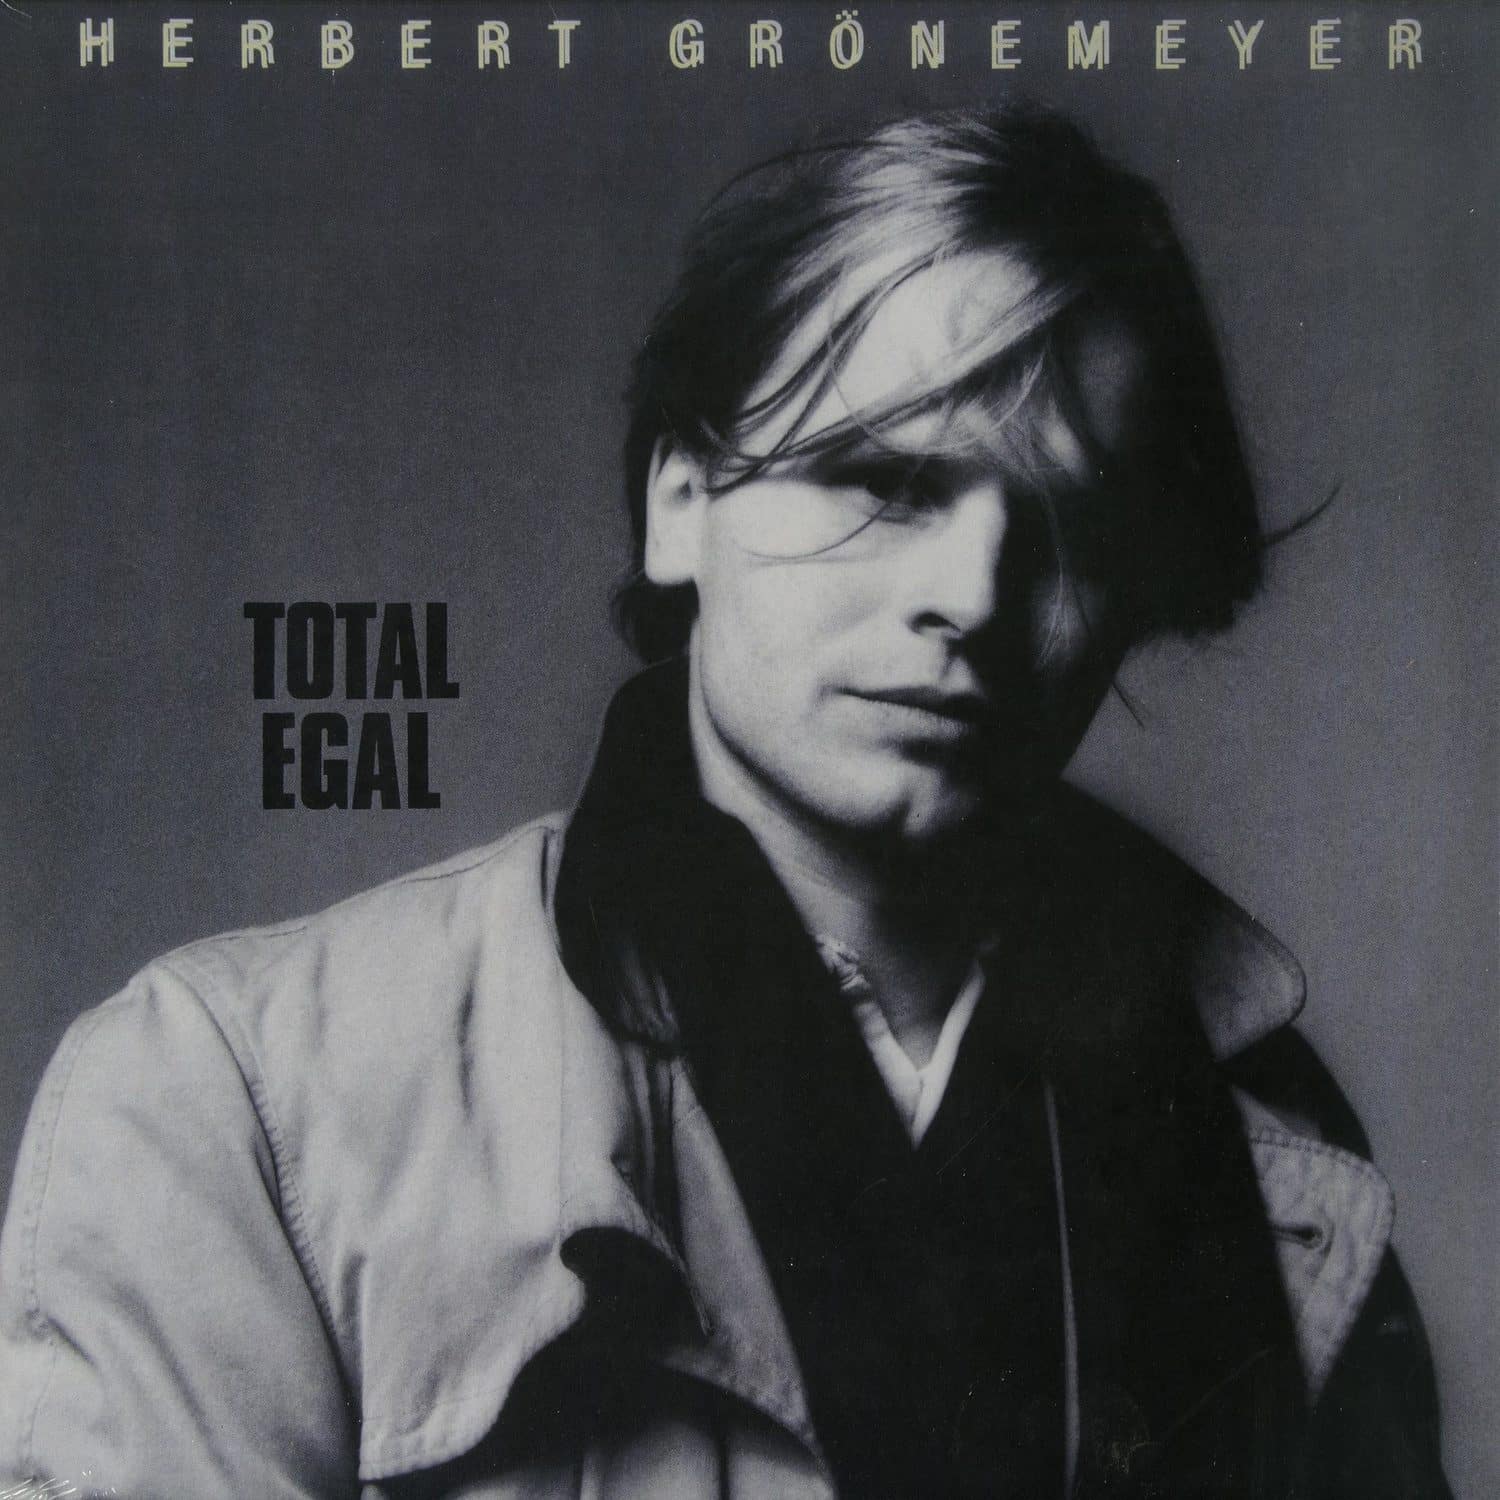 Herbert Groenemeyer - TOTAL EGAL 